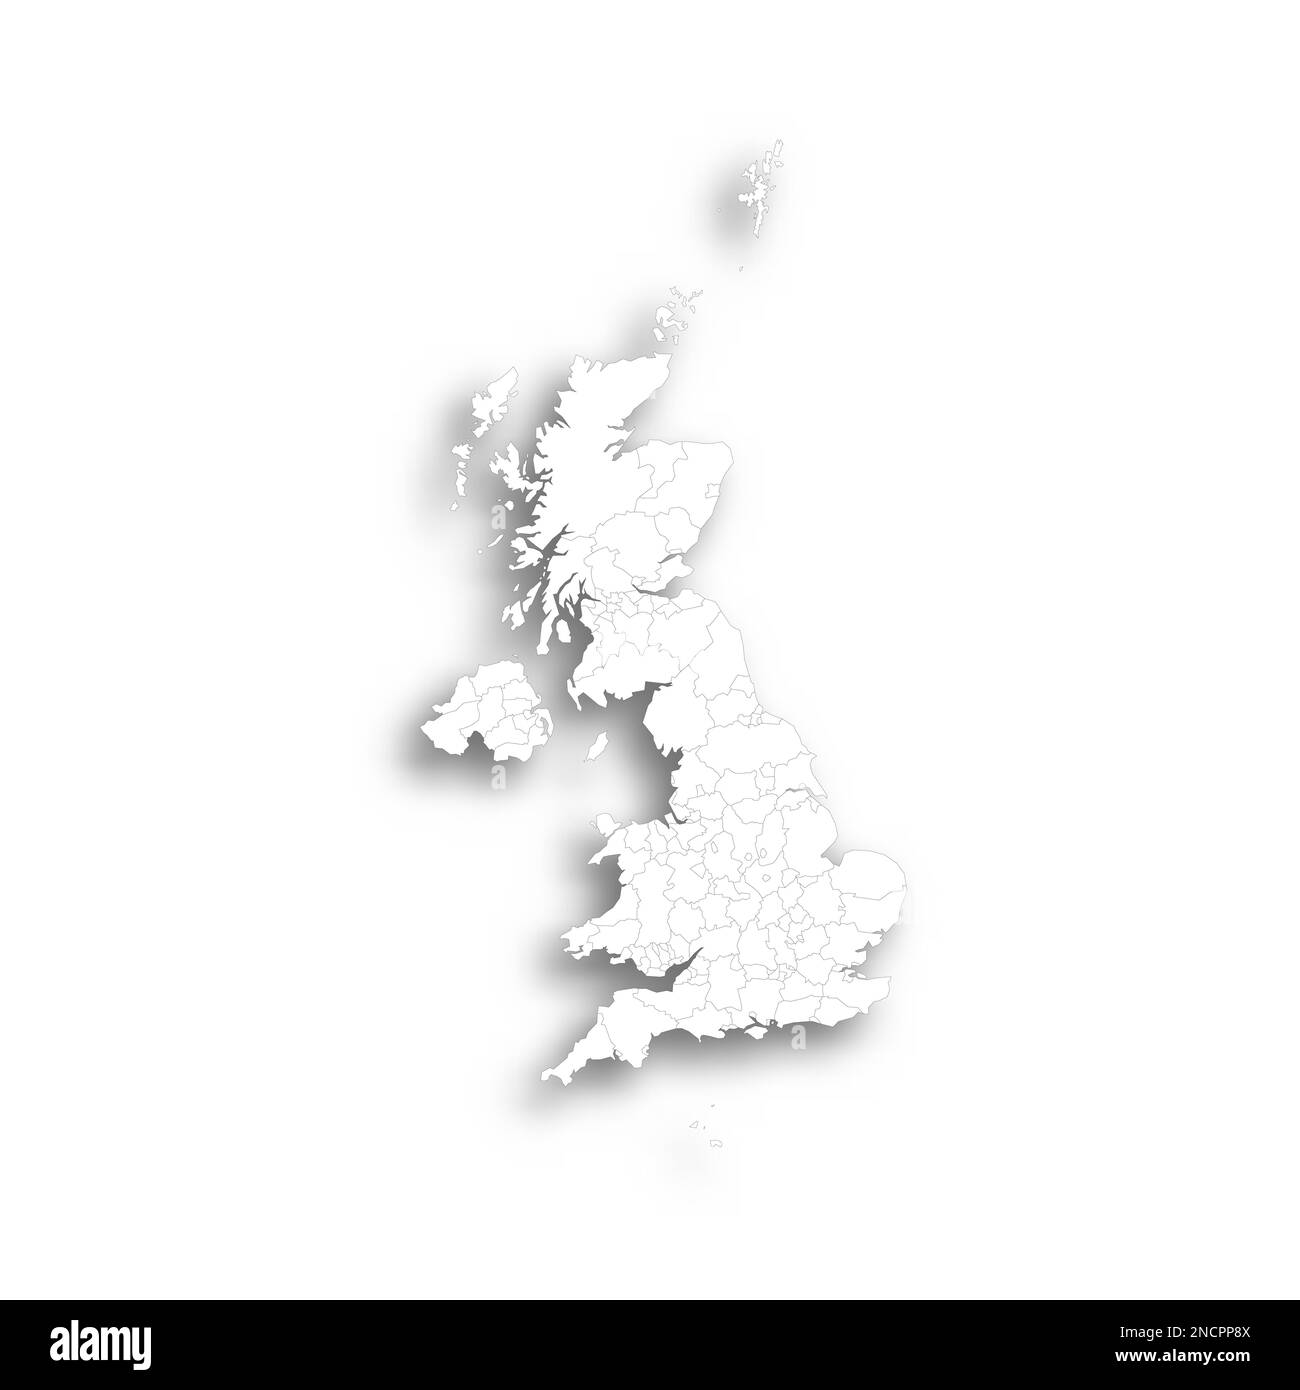 Royaume-Uni de Grande-Bretagne et d'Irlande du Nord carte politique des divisions administratives - comtés, autorités unitaires et Grand Londres en Angleterre, districts d'Irlande du Nord, régions du conseil de l'Écosse et comtés, arrondissements de comté et villes du pays de Galles. Carte blanche plate avec contour noir fin et ombre portée. Illustration de Vecteur